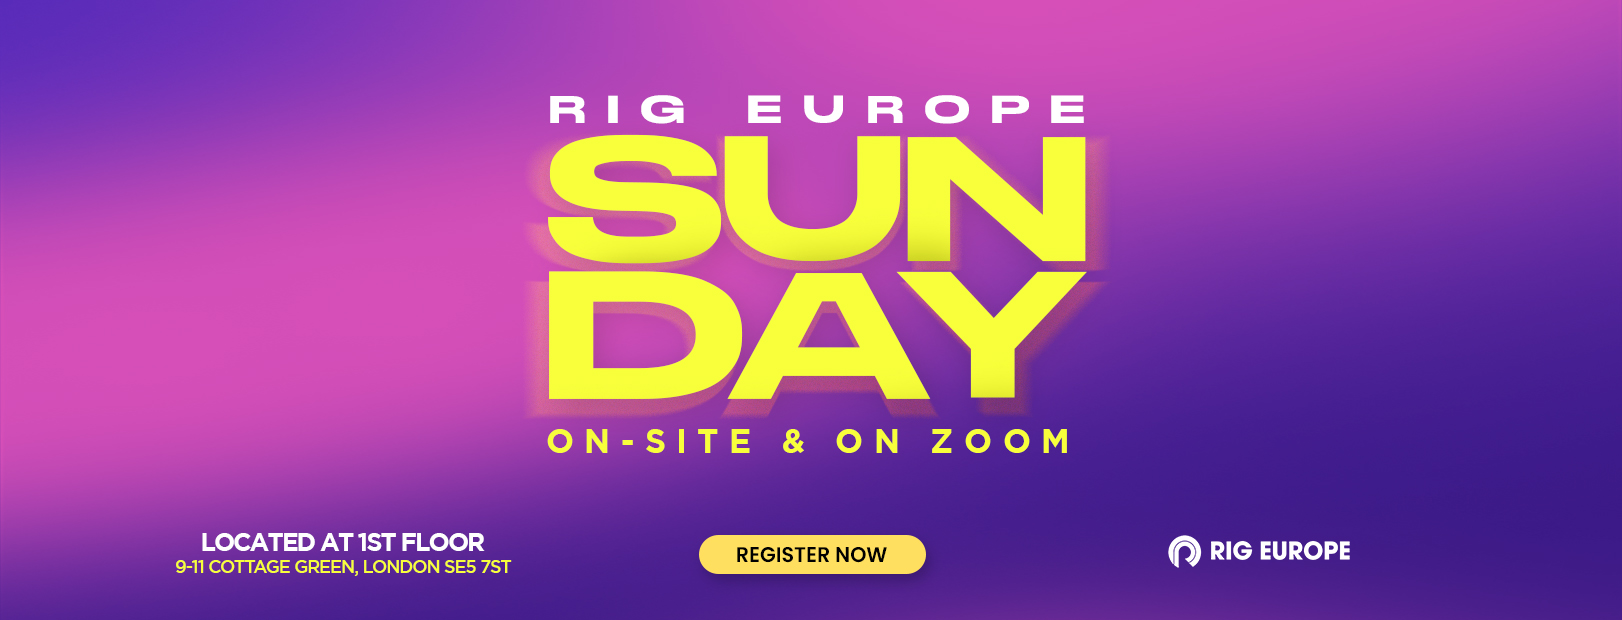 rig europe sunday_ web banner